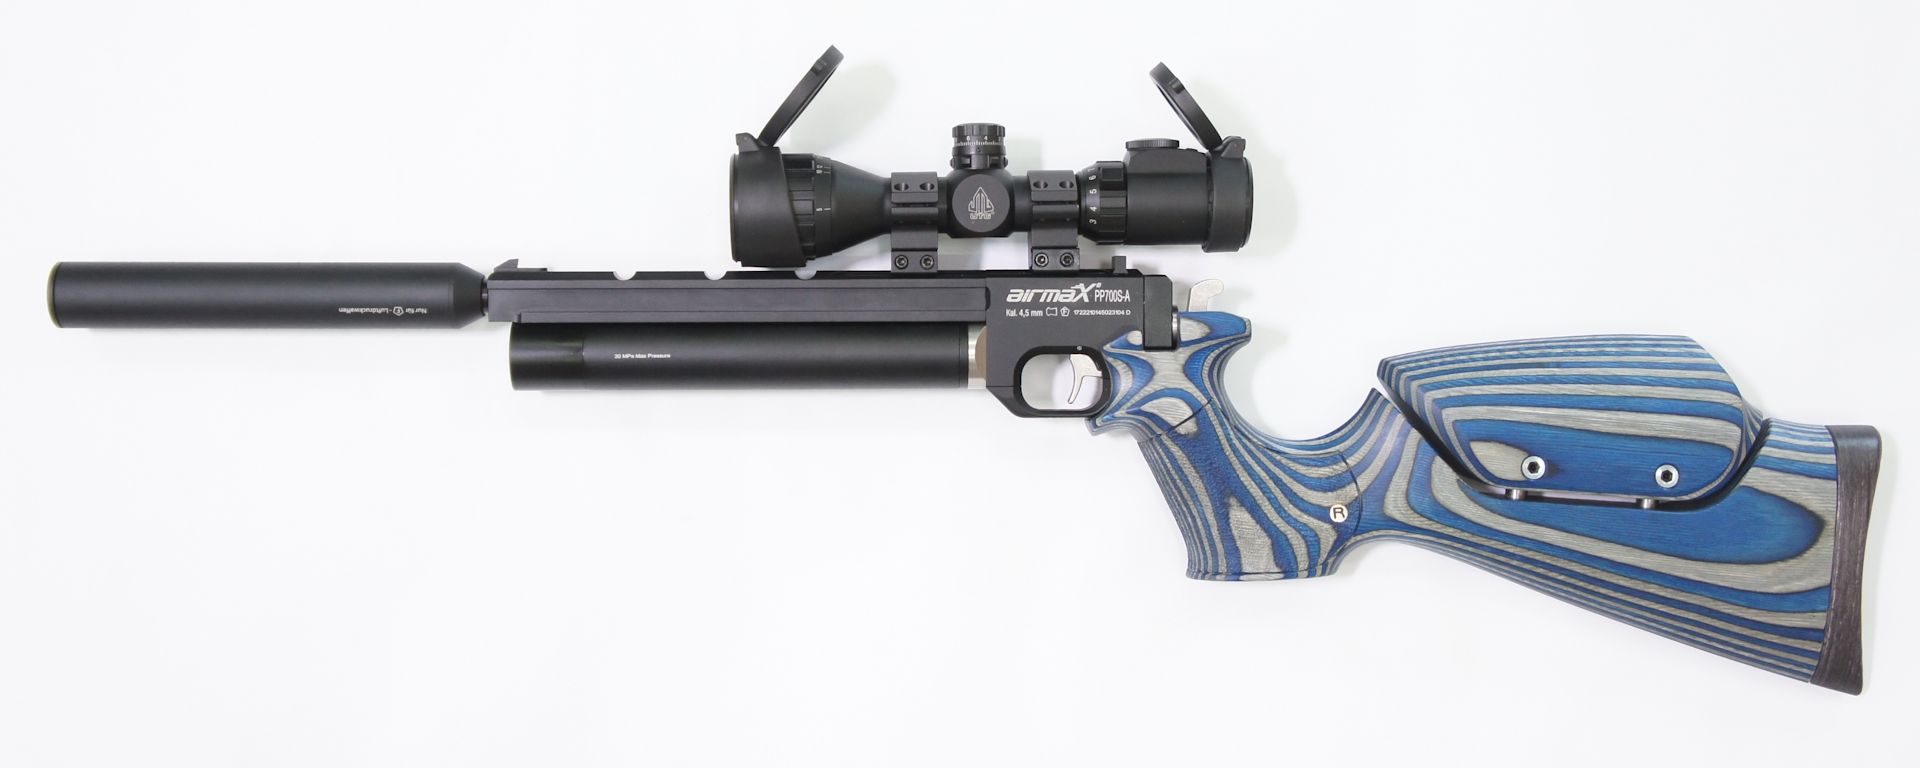 Kombinationsbeispiel mit diesem Pistolenkarabiner mit Optik und Schalldämpfer als Zubehör gegen Aufpreis